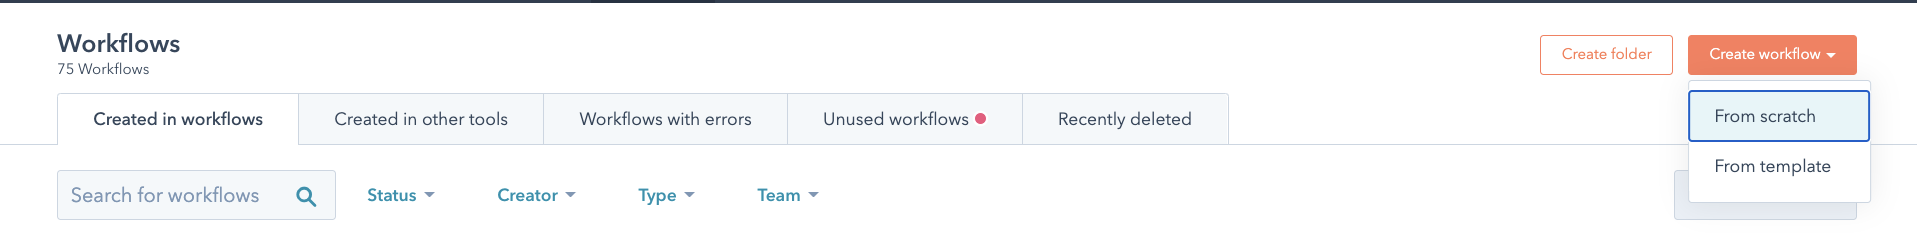 HubSpot workflows create